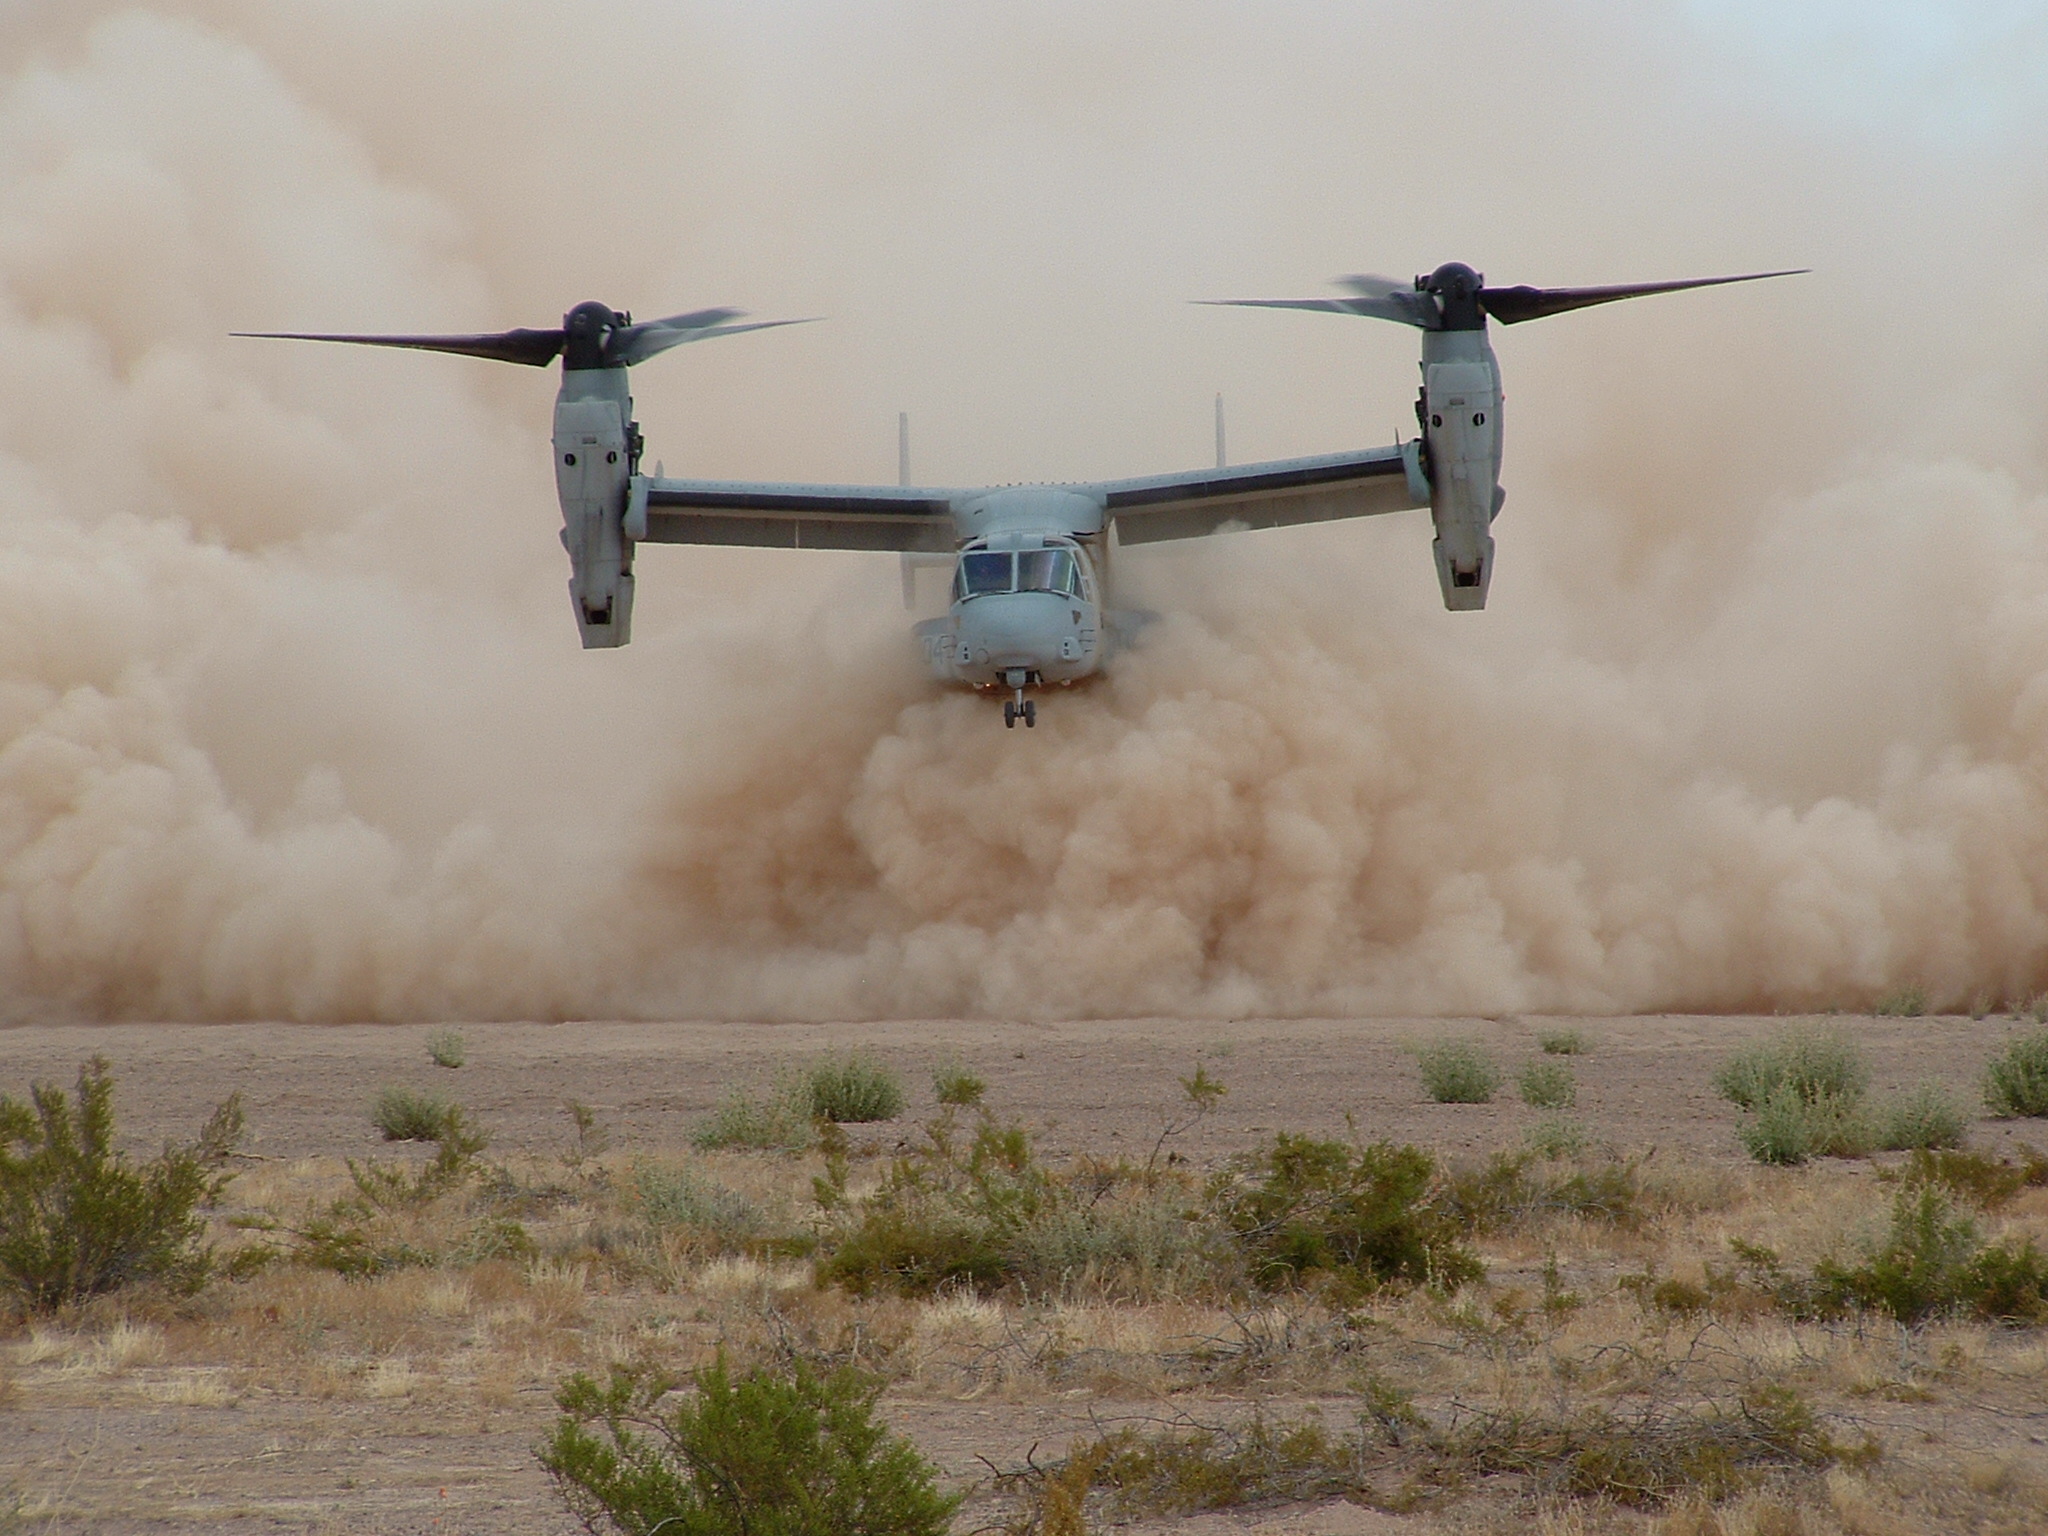 Az Osprey terepre termett, de nem korlátok nélkül <br>(fotó: flightglobal.com)